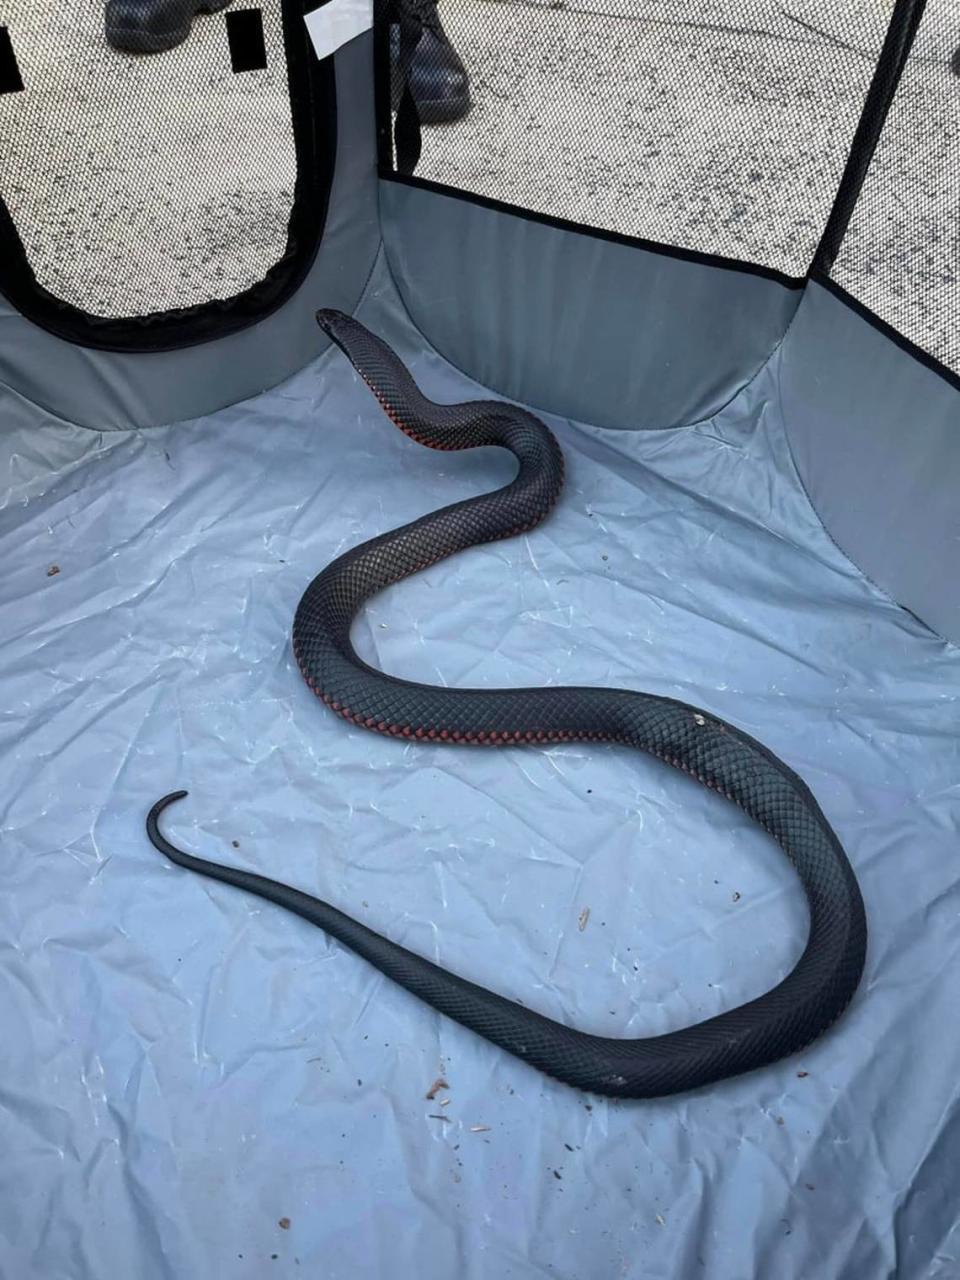 La serpiente negra de vientre rojo que se encontró en Sydney, Australia.